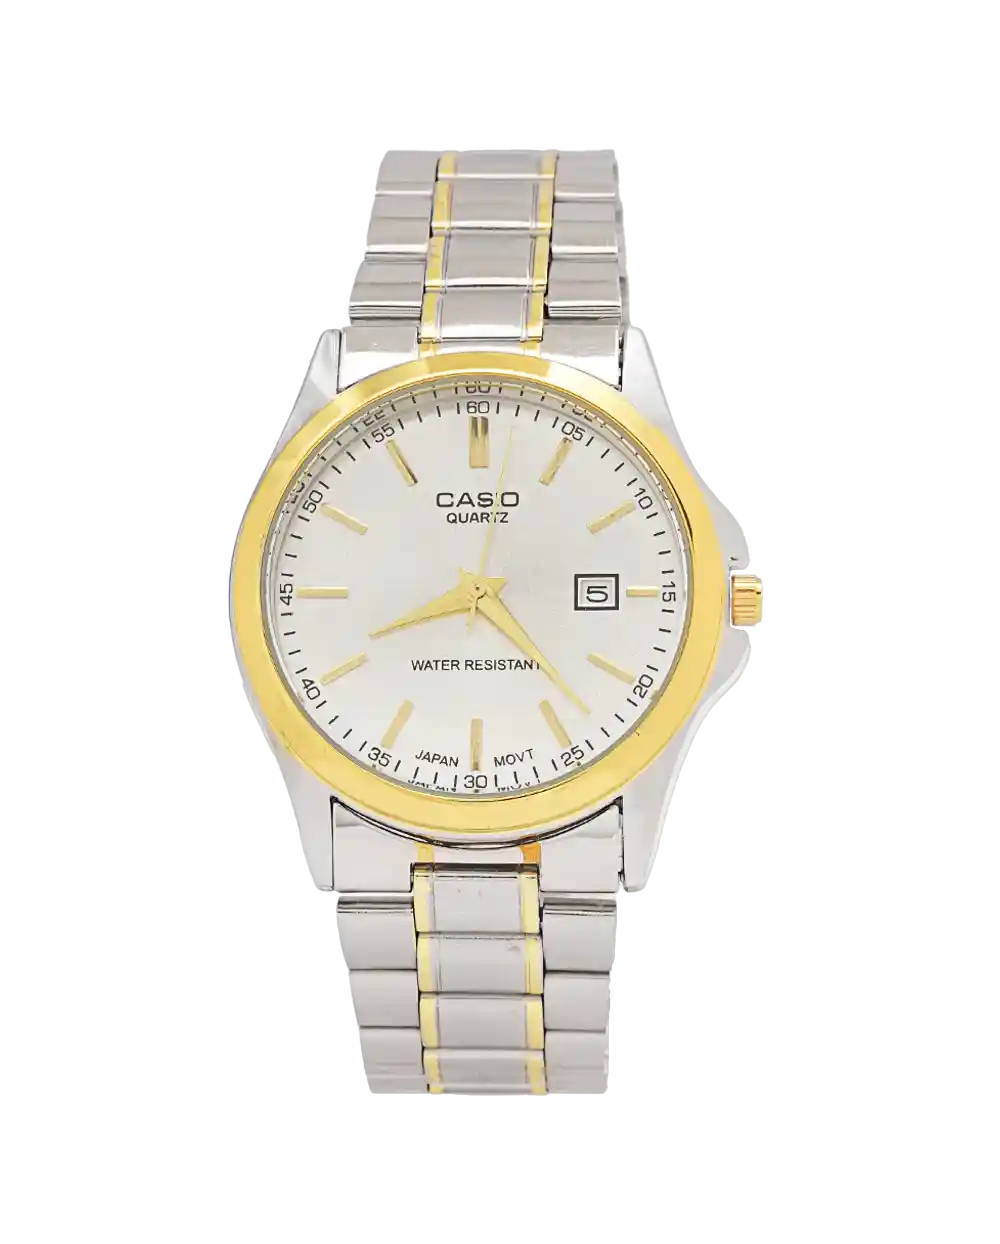 خرید ساعت مچی مردانه کاسیو CASIO مدل 1941 صفحه سفید با بند نقره ای طلایی و رنگ ثابت بهترین قیمت به همراه ارسال رایگان درب منزل